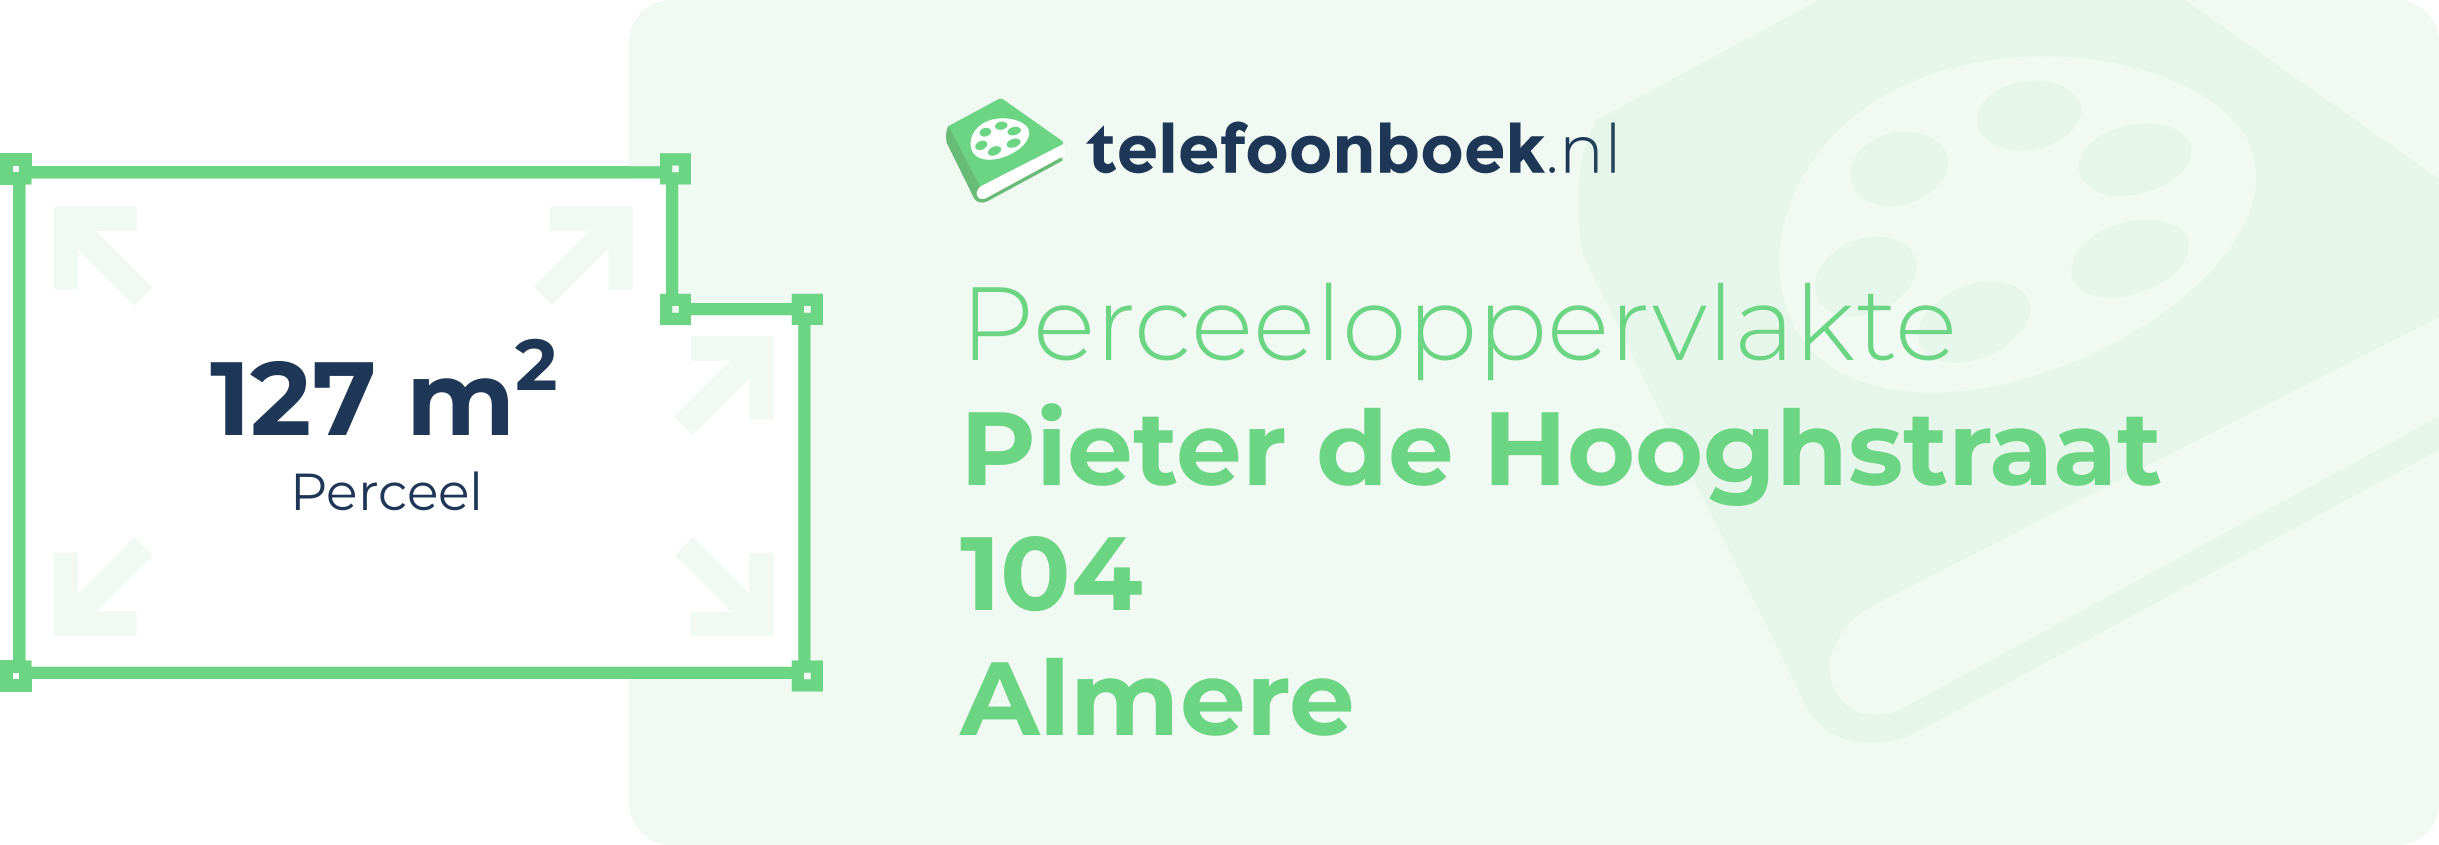 Perceeloppervlakte Pieter De Hooghstraat 104 Almere